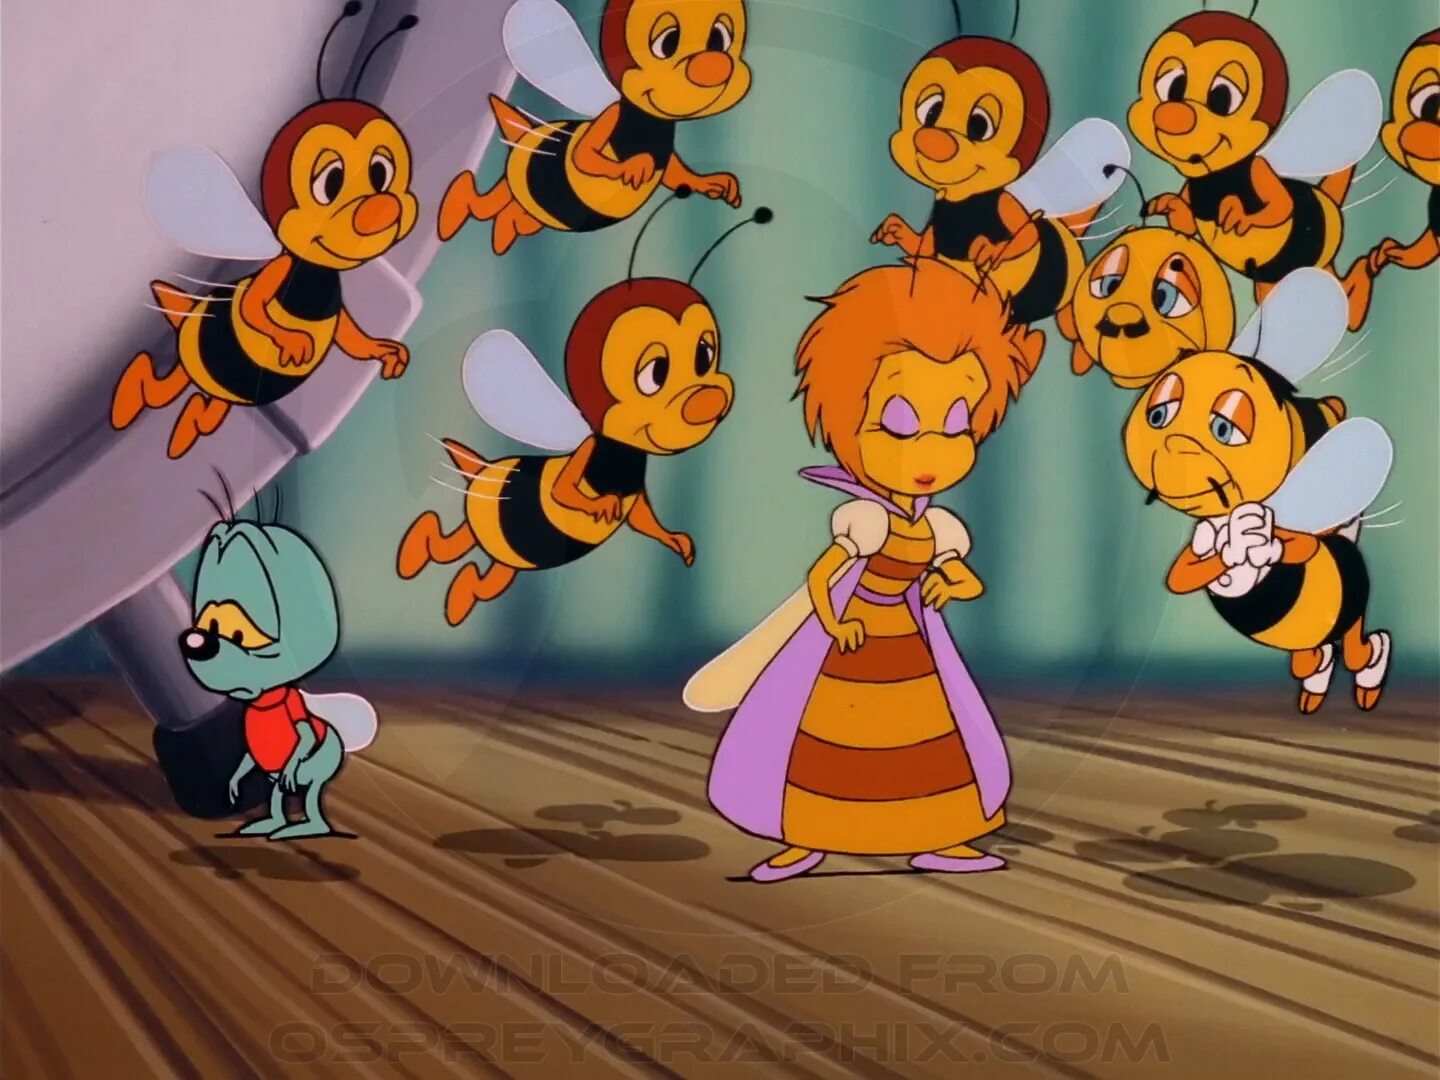 Песня чипи чипи 1 час. Пчела из мультика чип и Дейл. Чип и Дейл Королева пчел. Королева пчел из чип и Дейла. Пчелка из чип и Дейл.